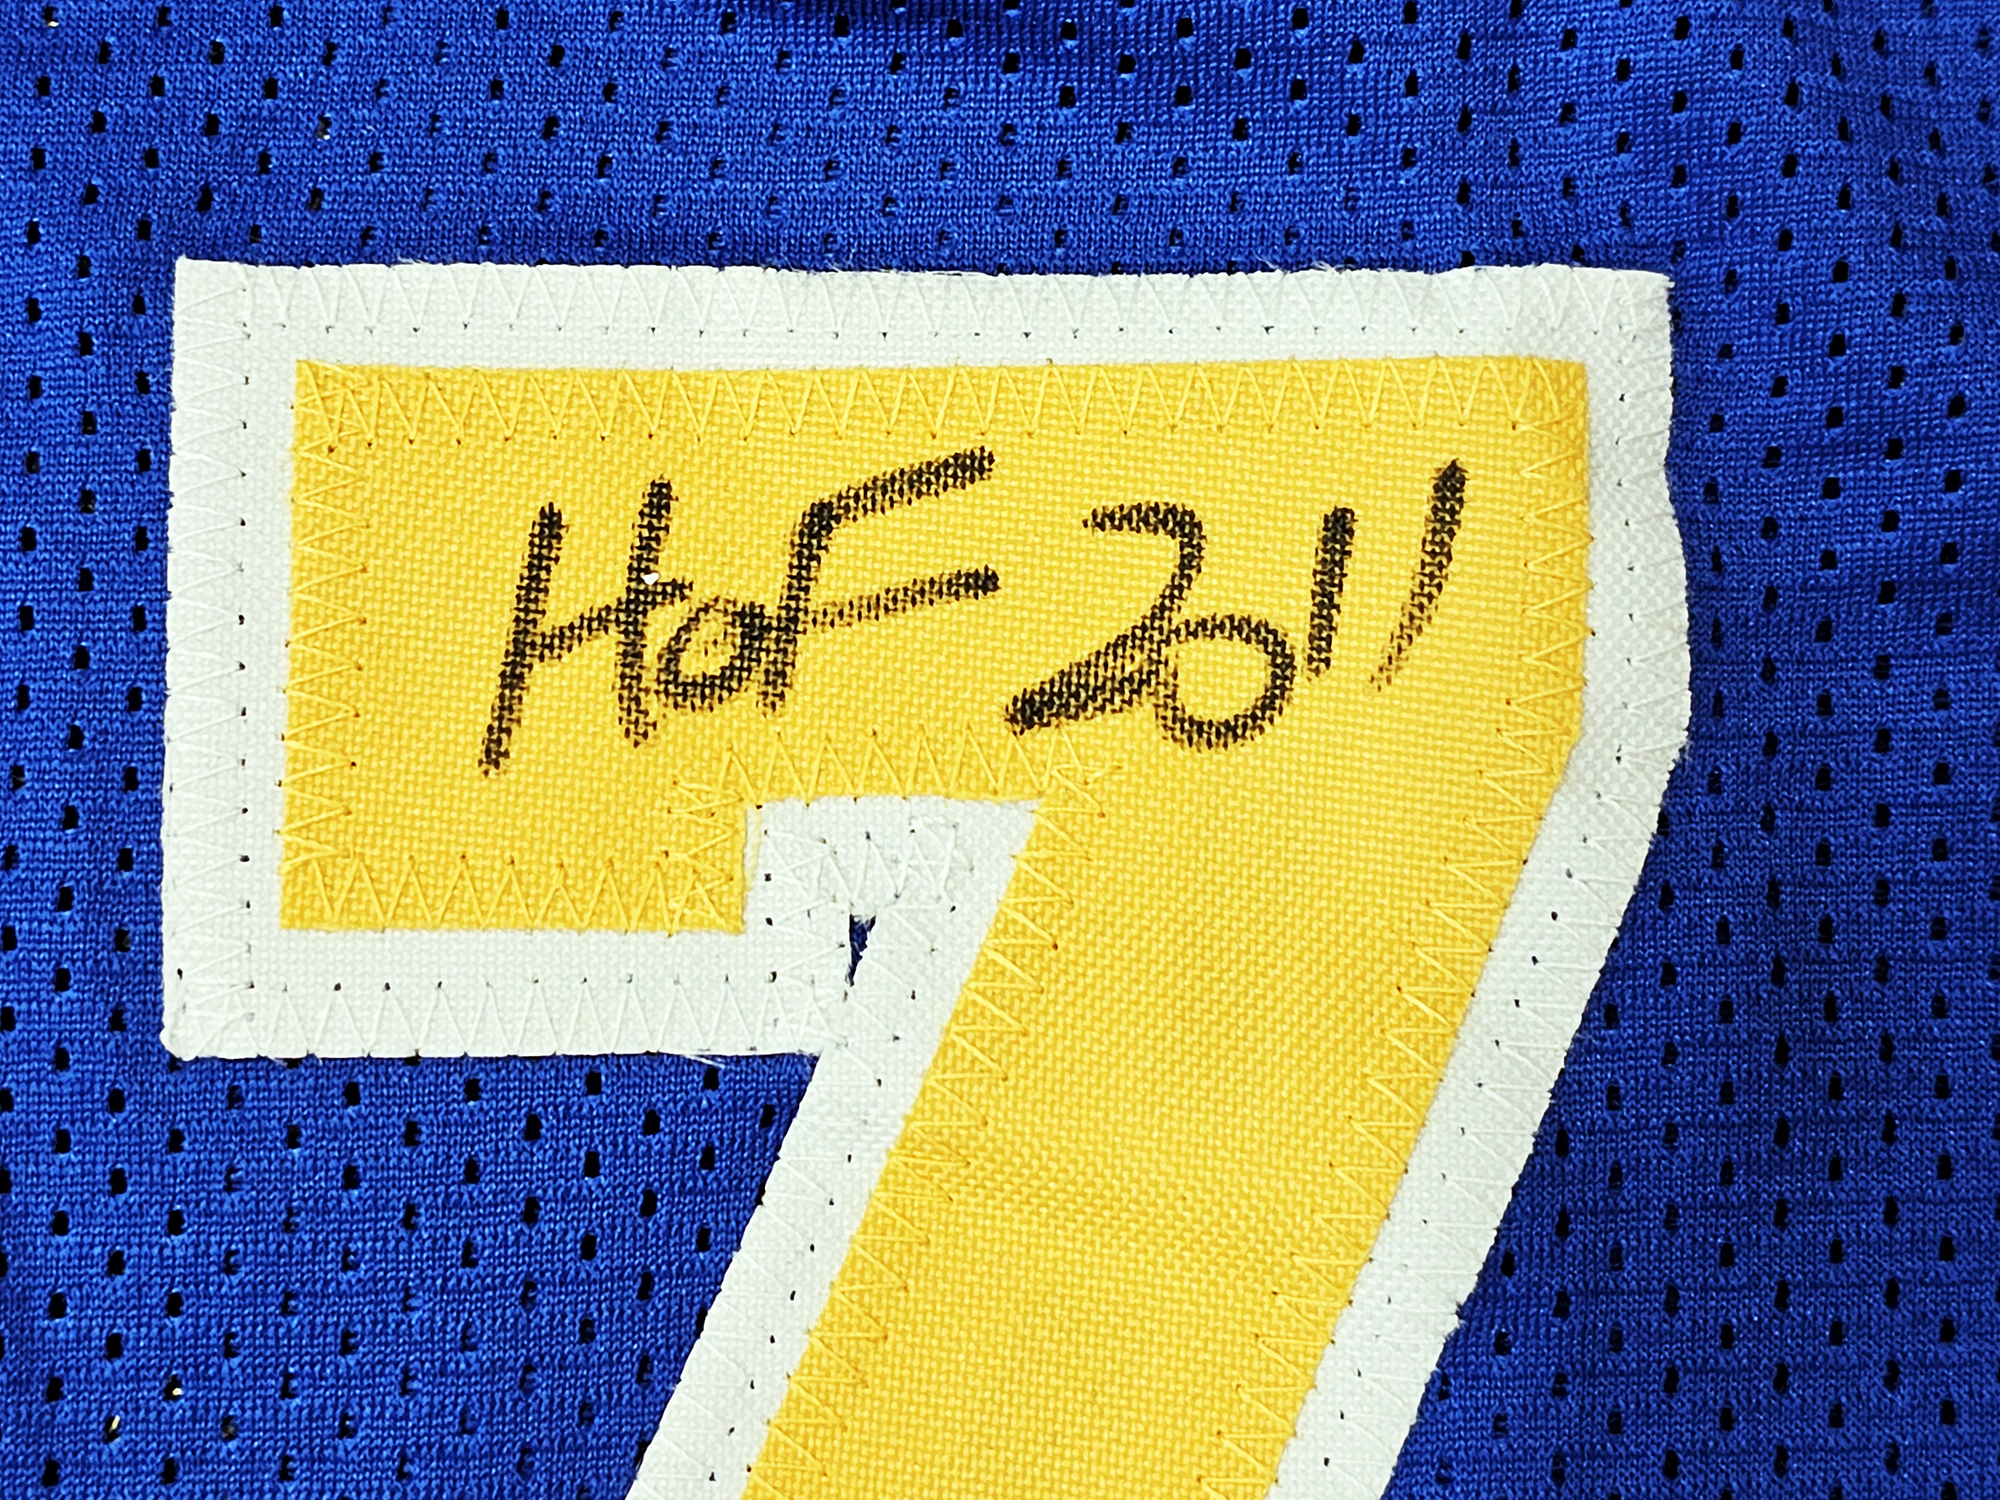 Golden State Warriors Chris Mullin, Tim Hardaway & Mitch Richmond Autographed Yellow Jersey Run TMC HOF Beckett BAS Witness